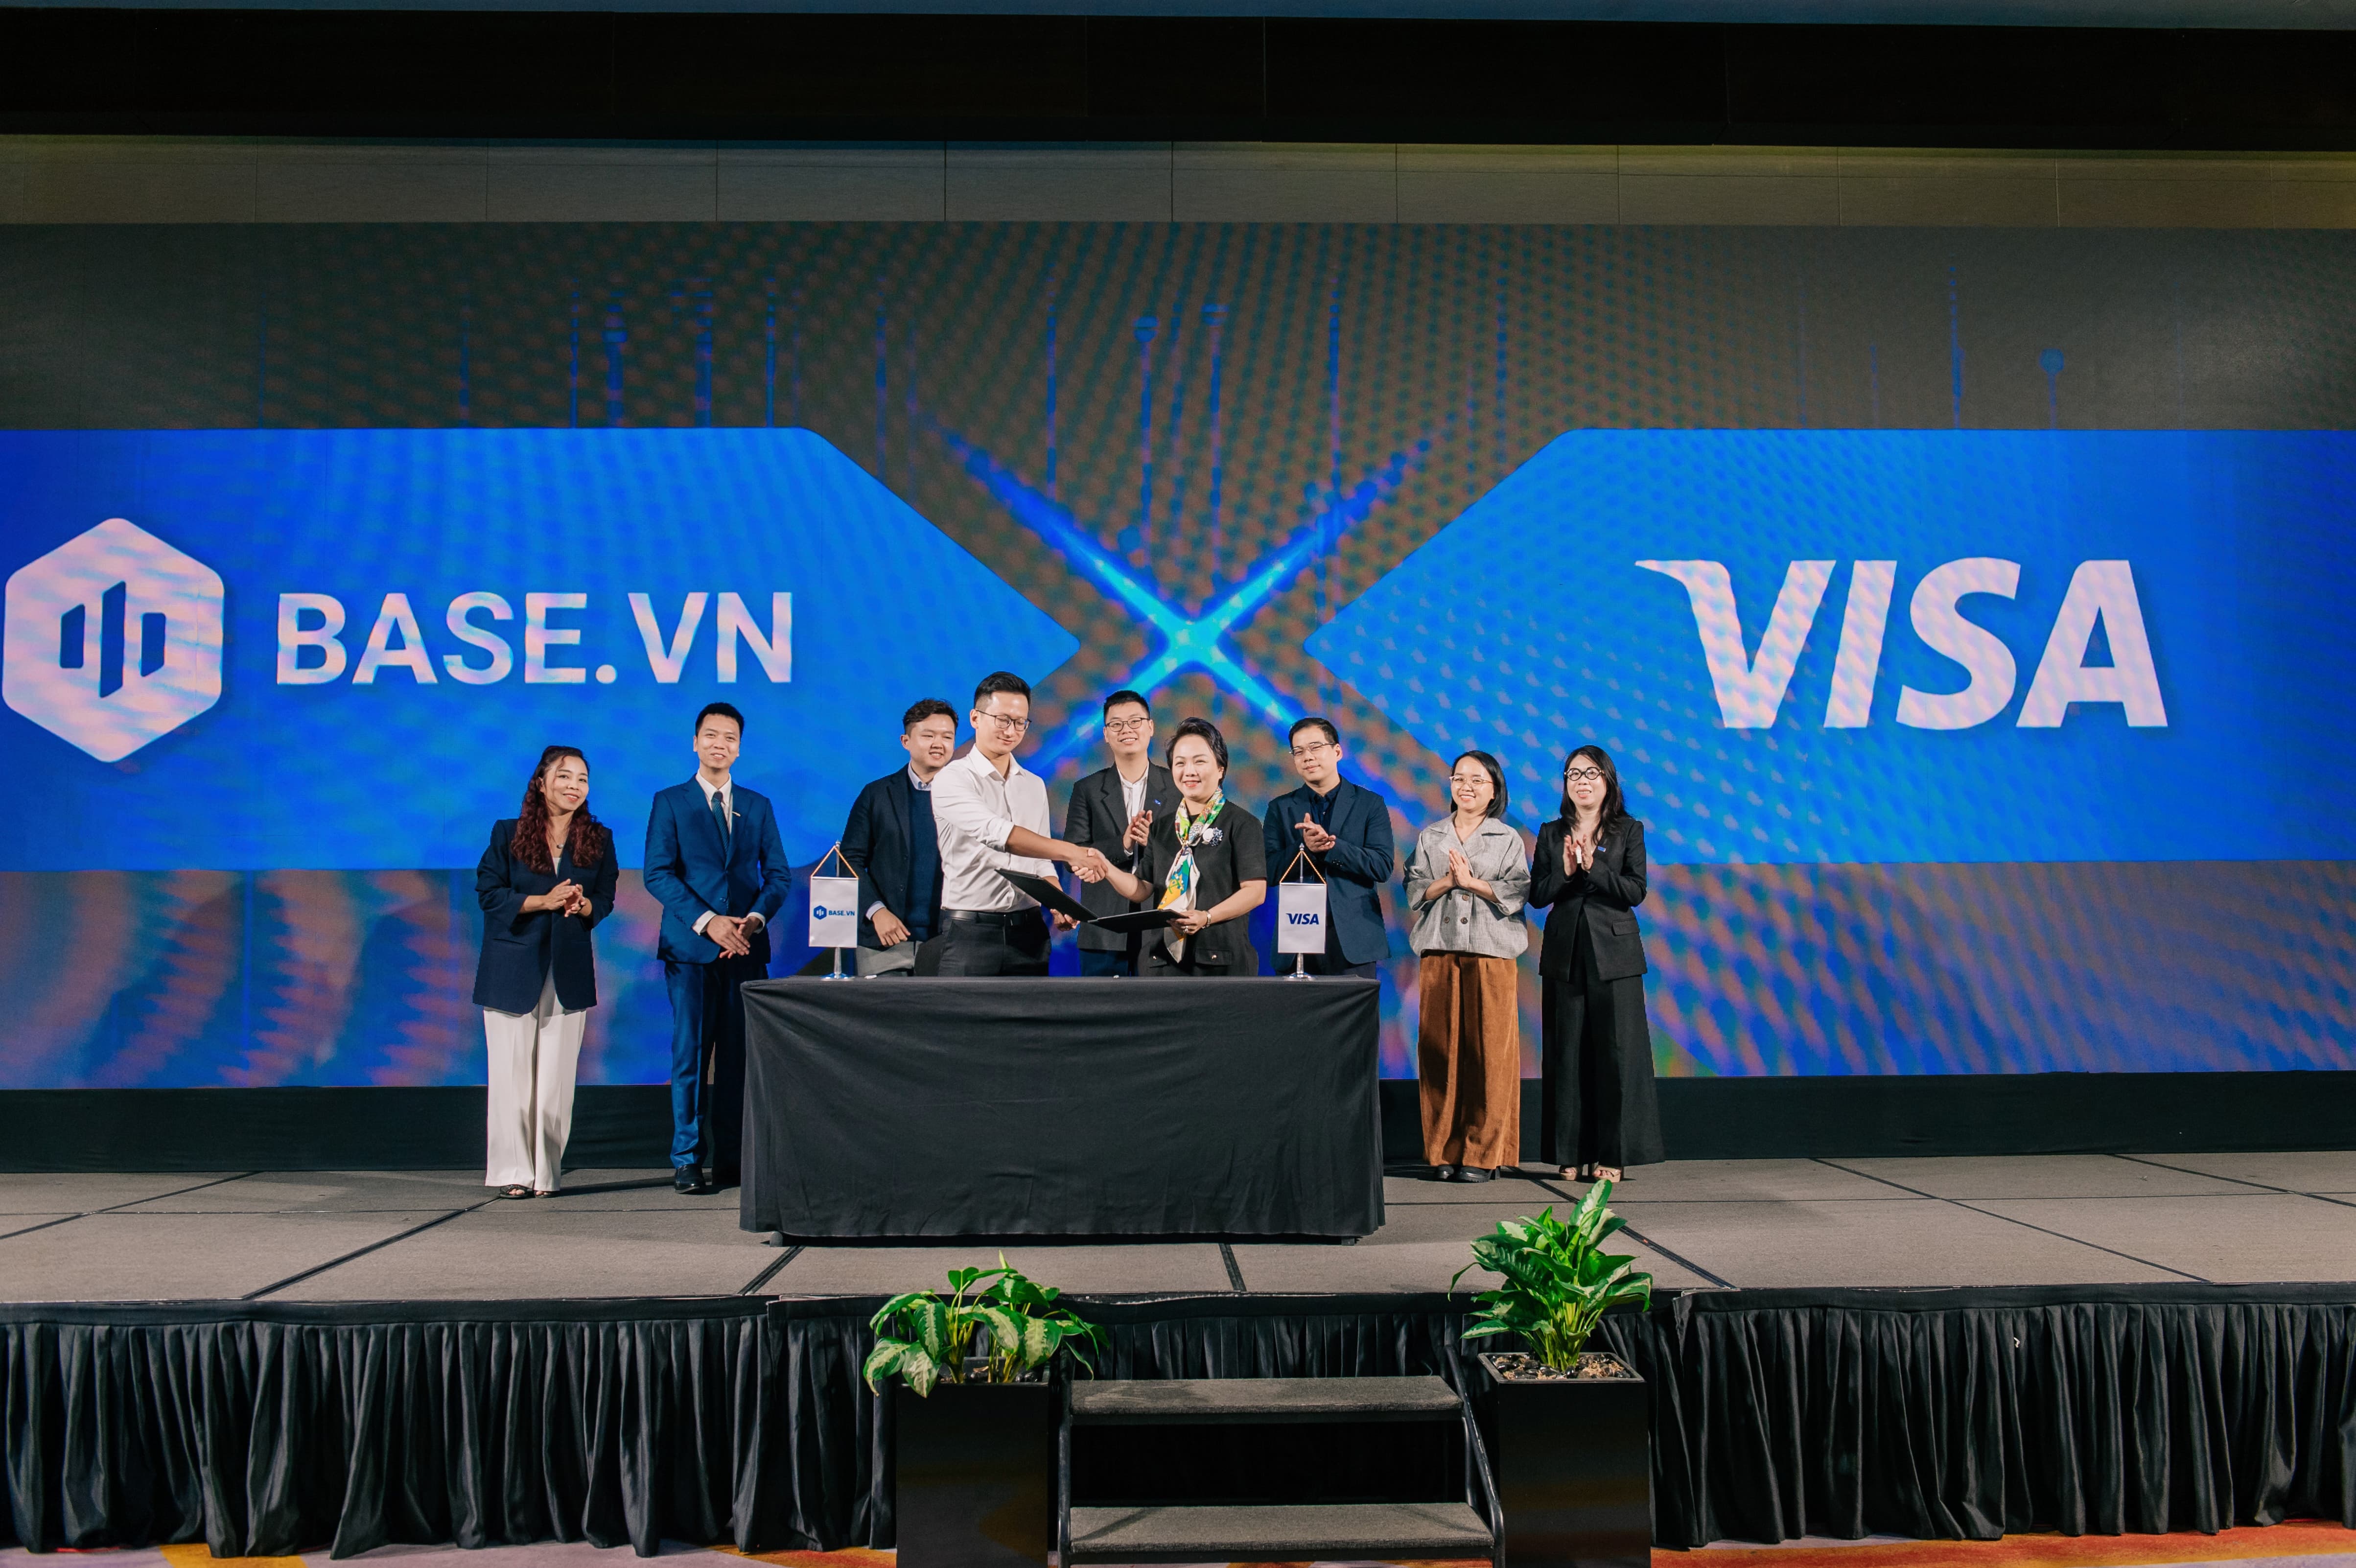 Visa hợp tác tài trợ sự kiện về doanh nghiệp và công nghệ hàng đầu Việt Nam